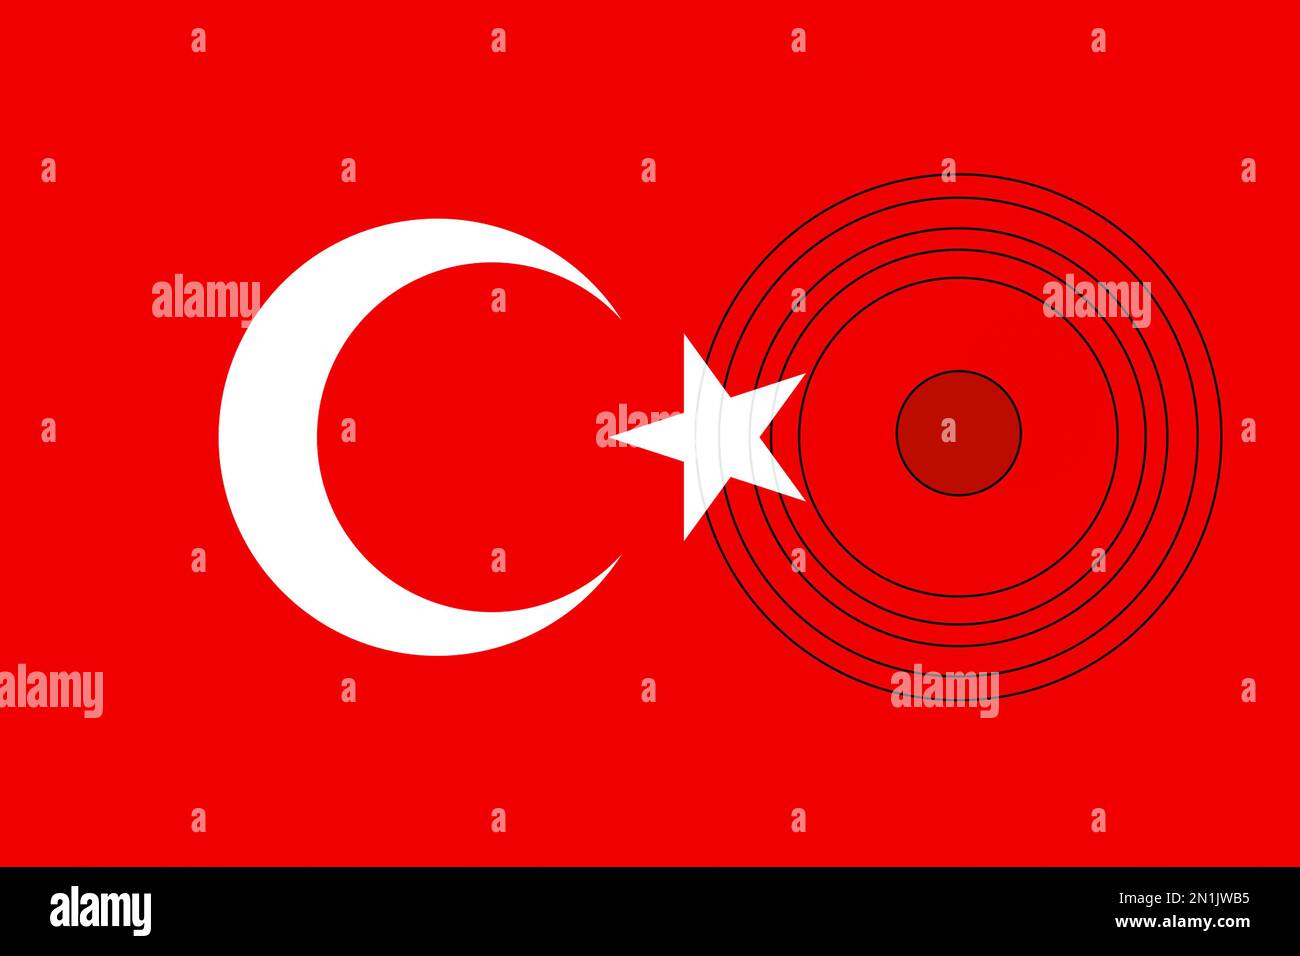 Erdbeben In Der Türkei, 6. Februar 2023. Ein trauriges Banner. Das Epizentrum des Erdbebens in der Türkei. Bete für die Türkei. Hintergrund der türkischen Flagge Stockfoto